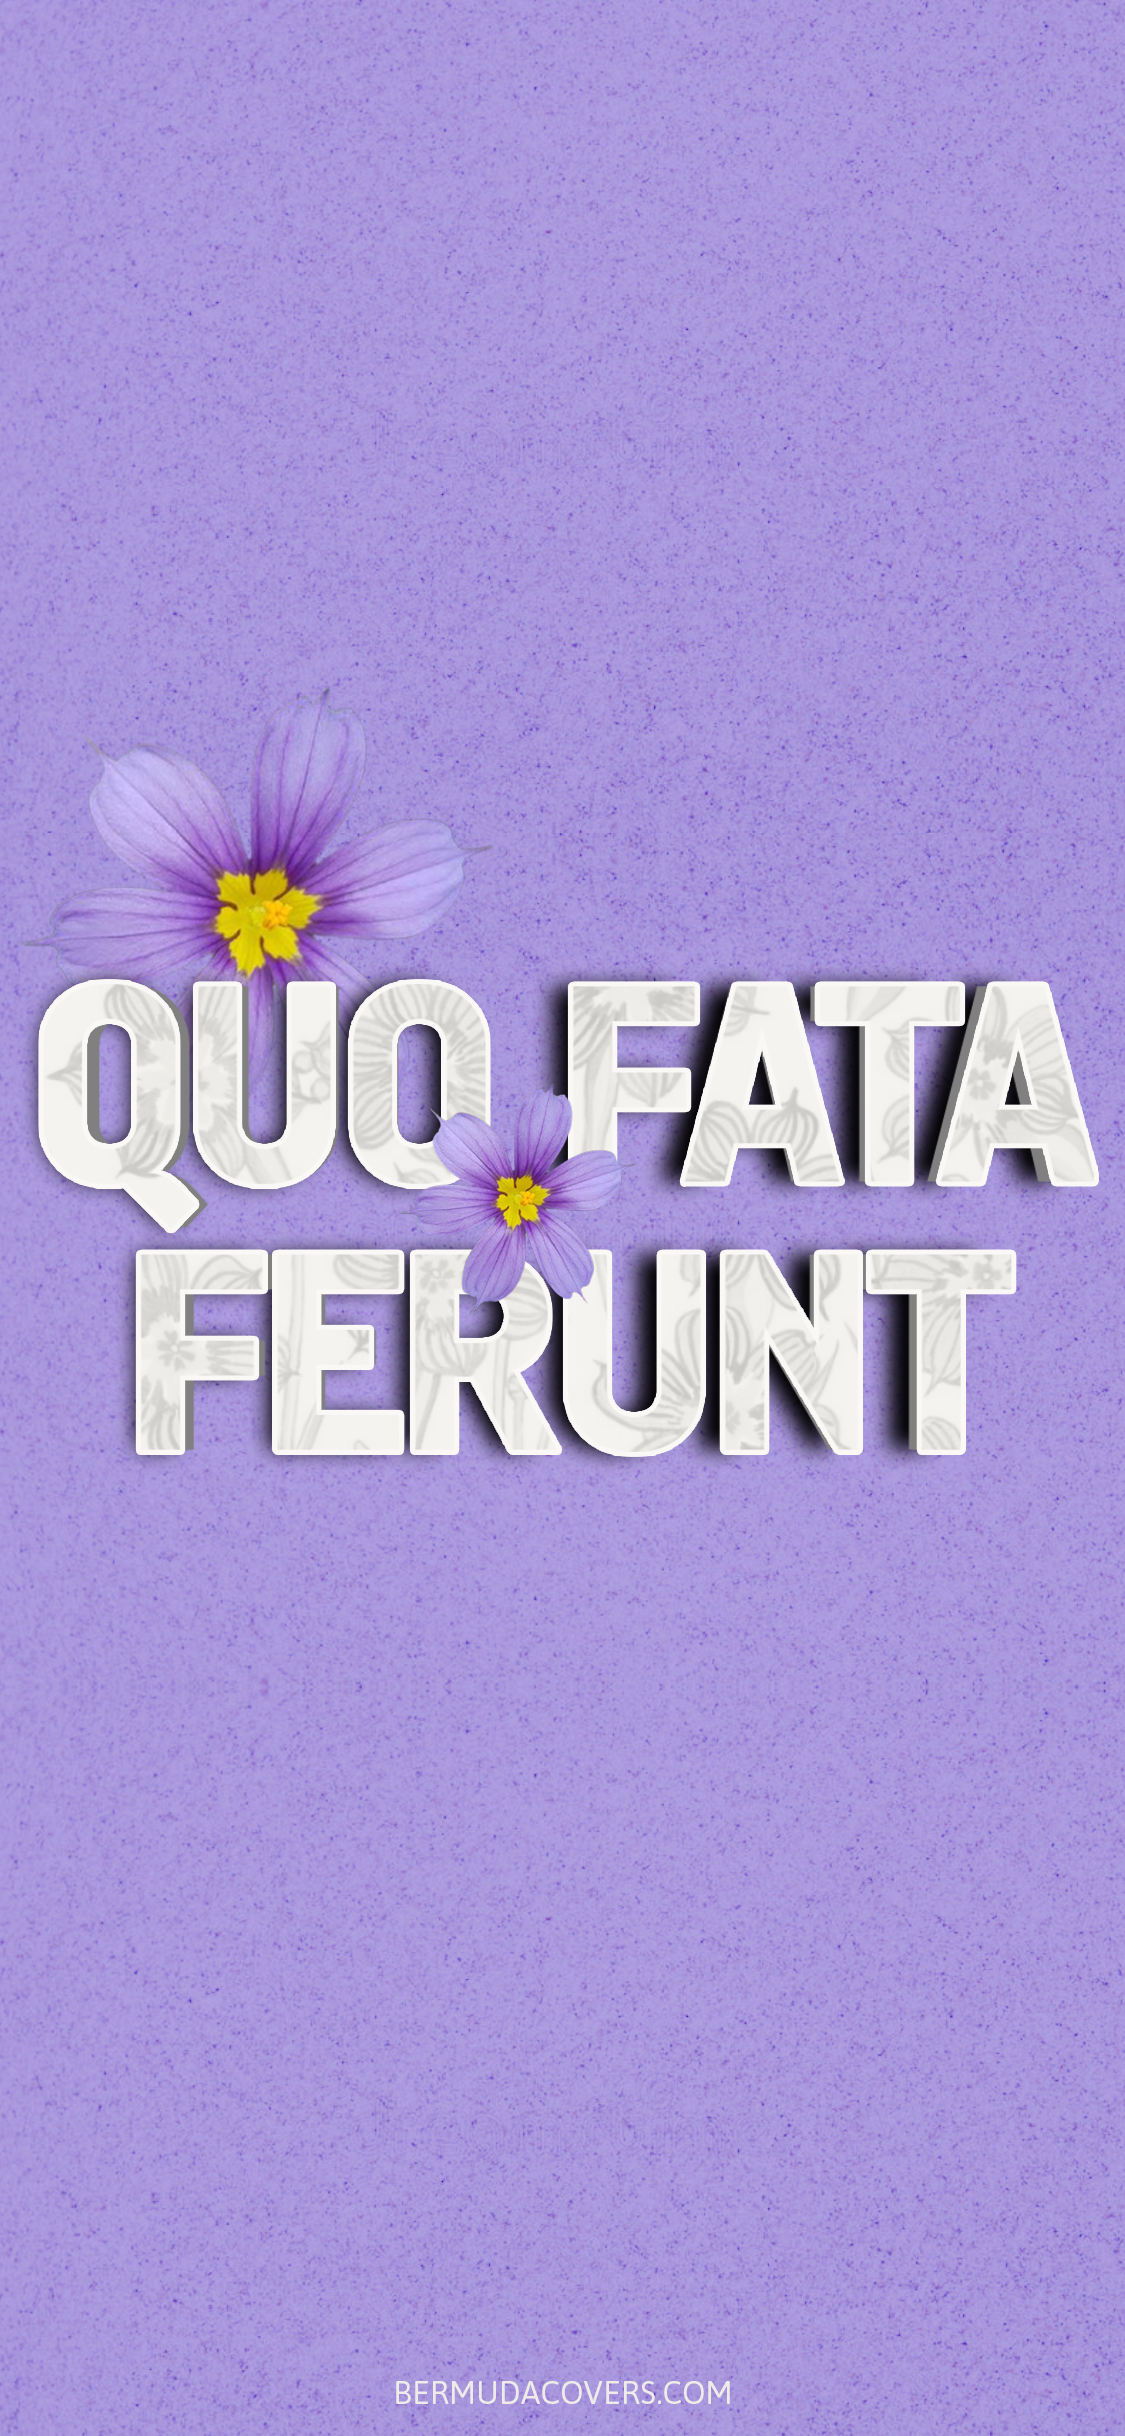 Quo-Fata-Ferunt-Bermudiana-Bernews-Mobile-phone-wallpaper-lock-screen-design-image-photo-j742qLwj